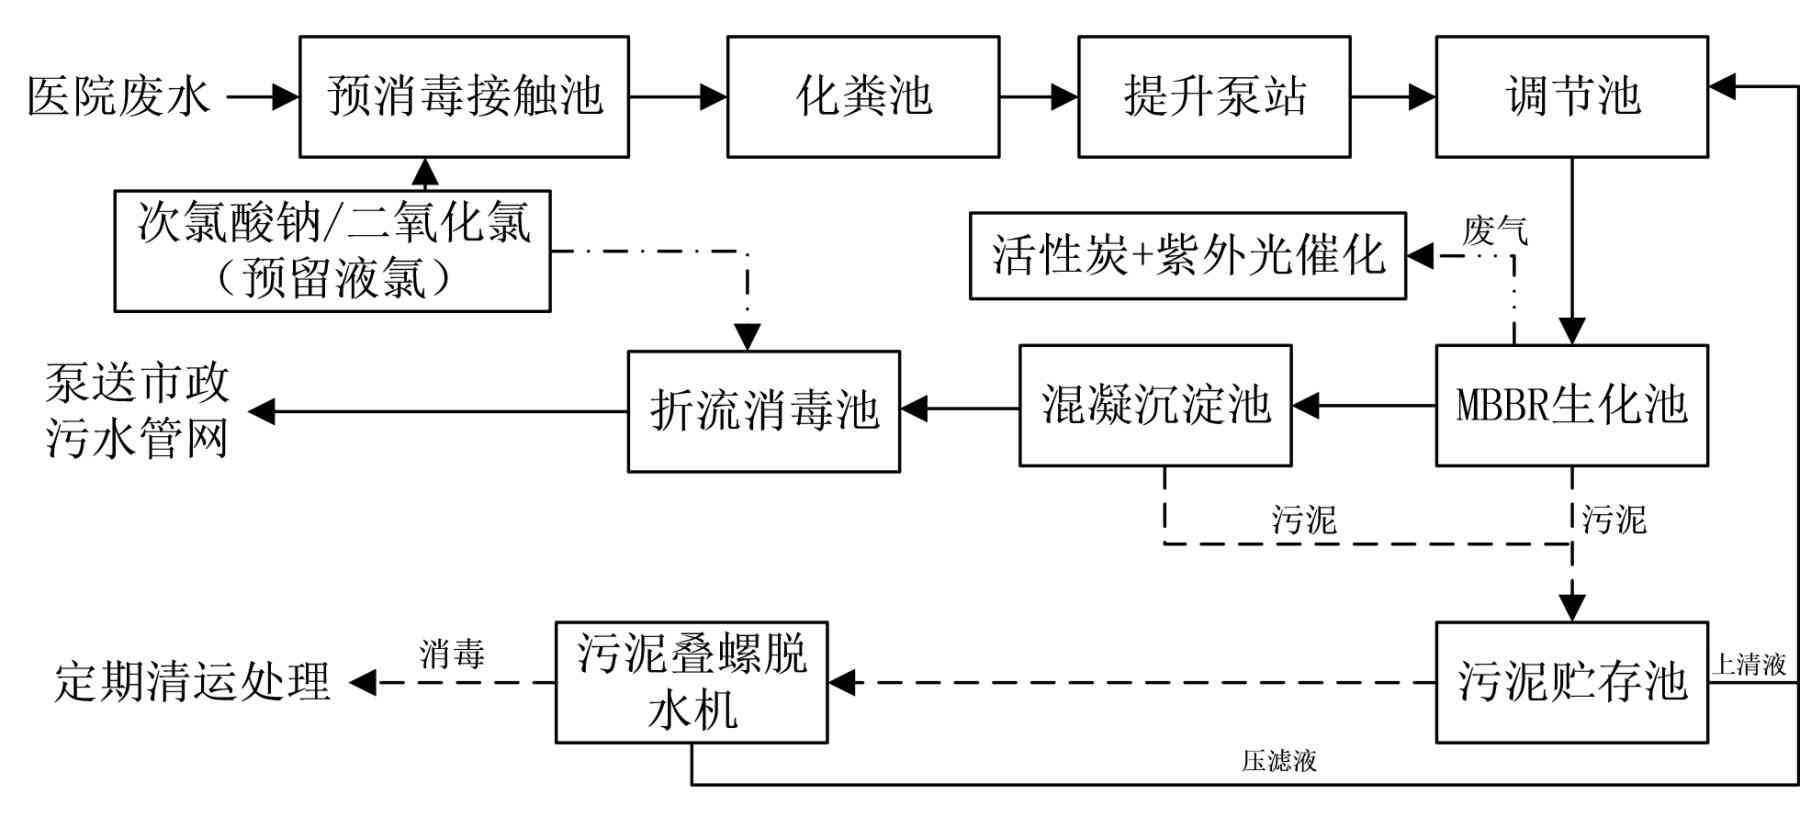 中国知网-工艺流程